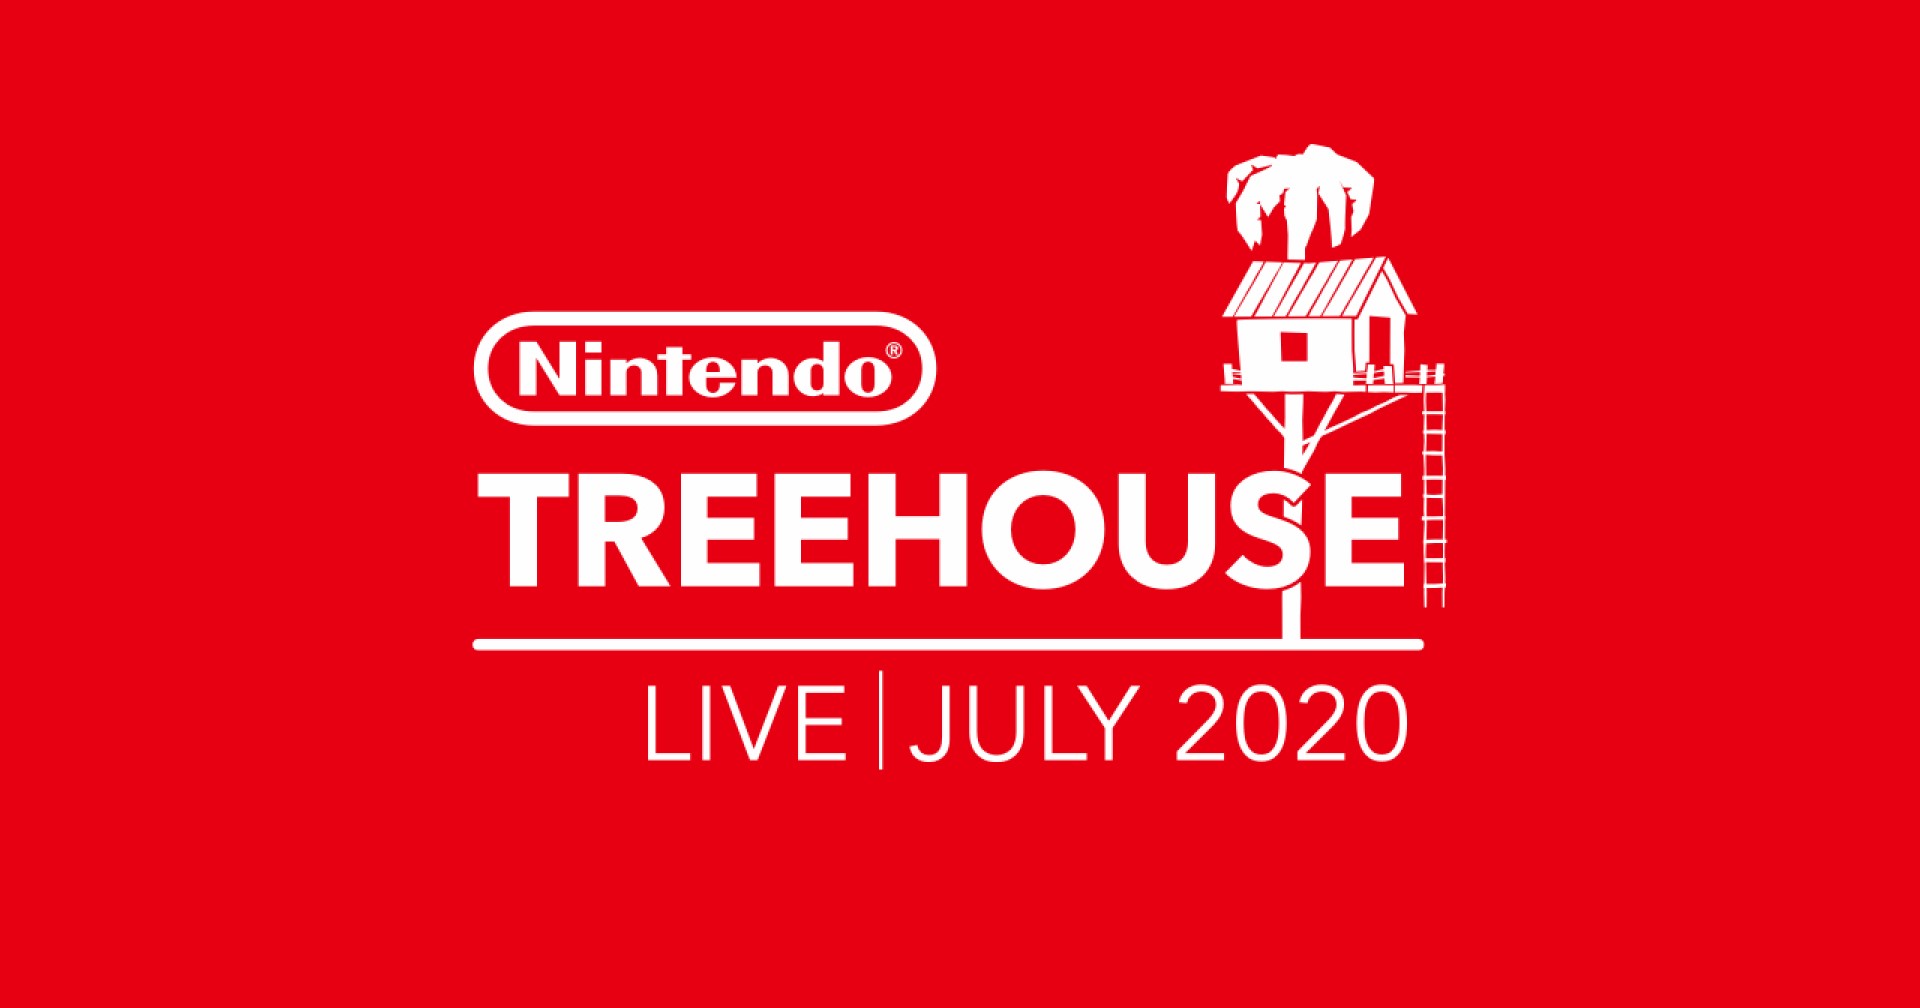 ทีมงาน Nintendo Treehouse ลาออกหลังทำงานมา 11 ปี